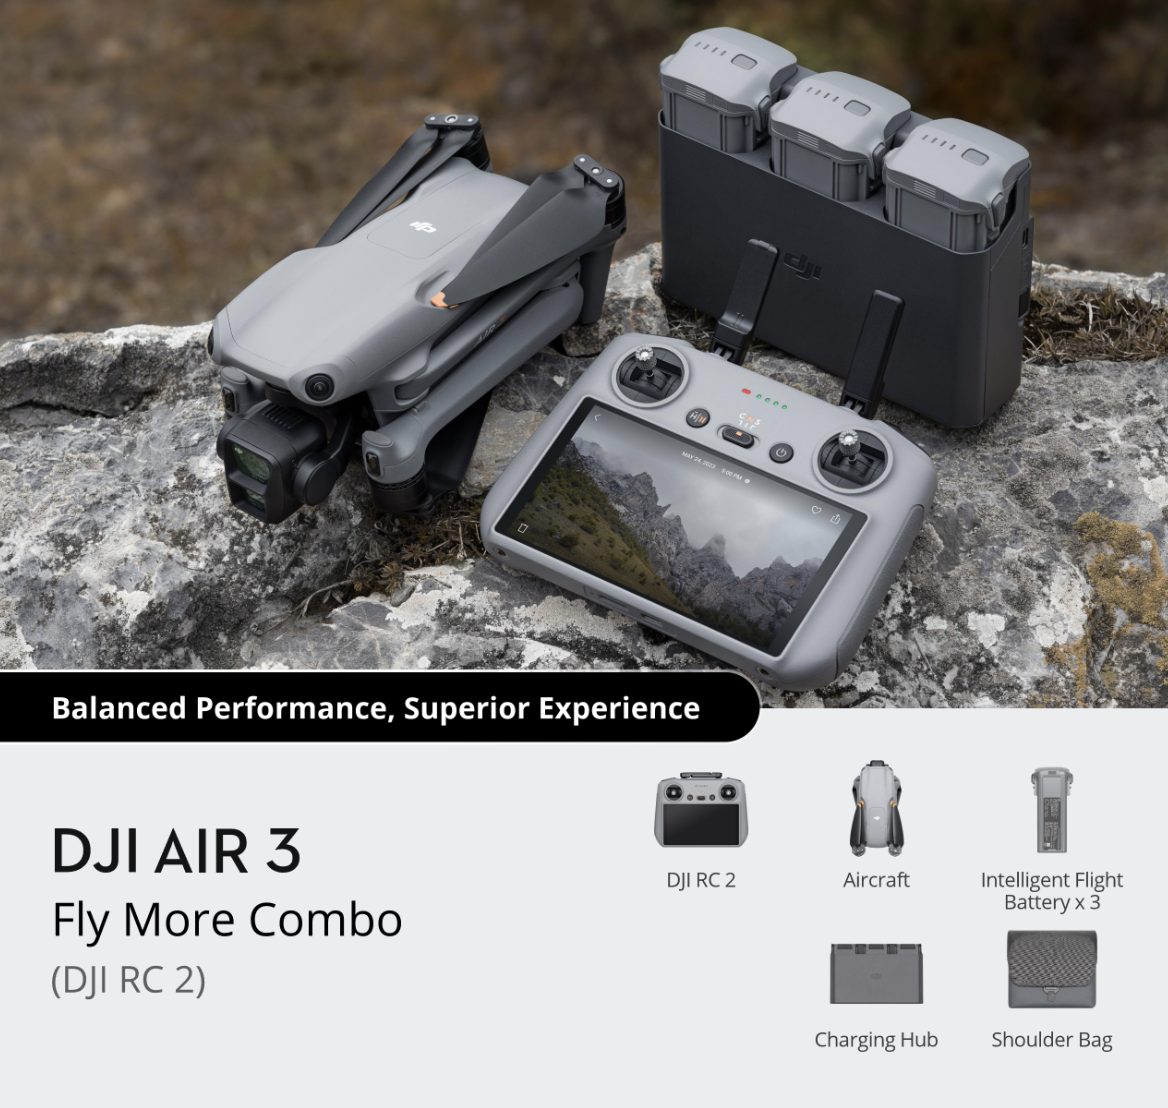 DJI Air 3 Flymore Combo (DJI RC 2) visual